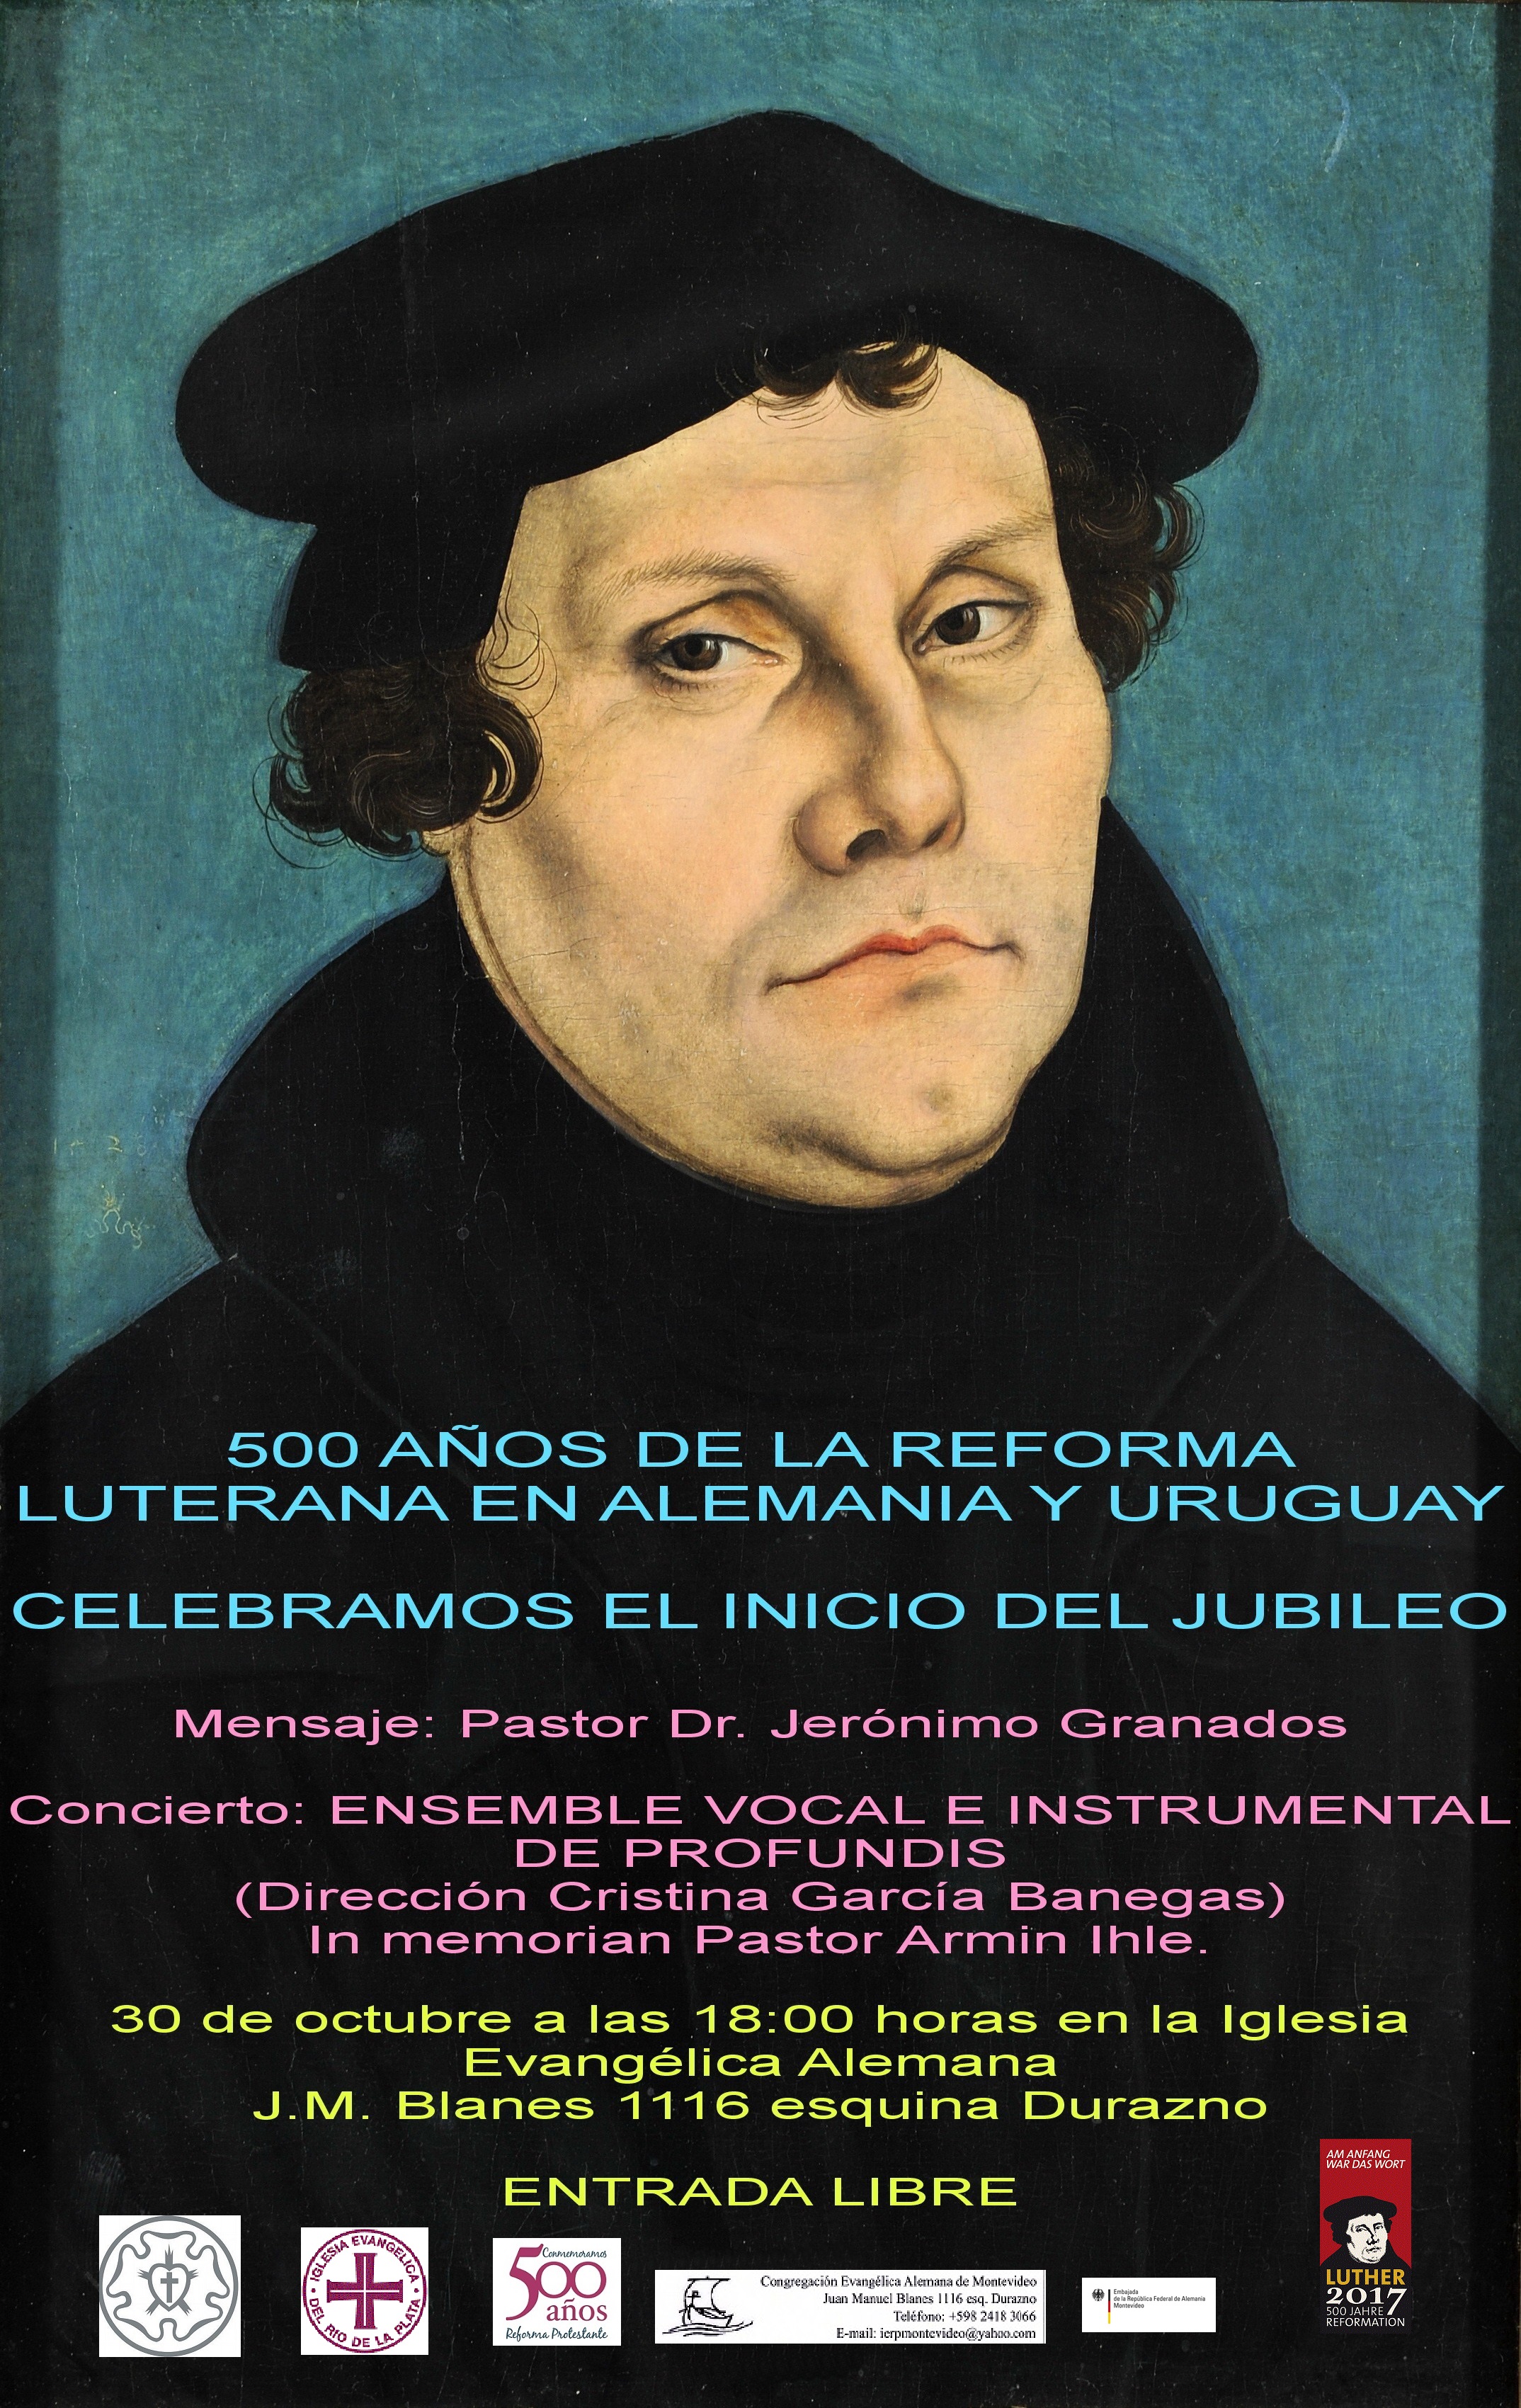 500 años de la Reforma Luterana en Alemania y Uruguay celebramos el inicio del jubileo